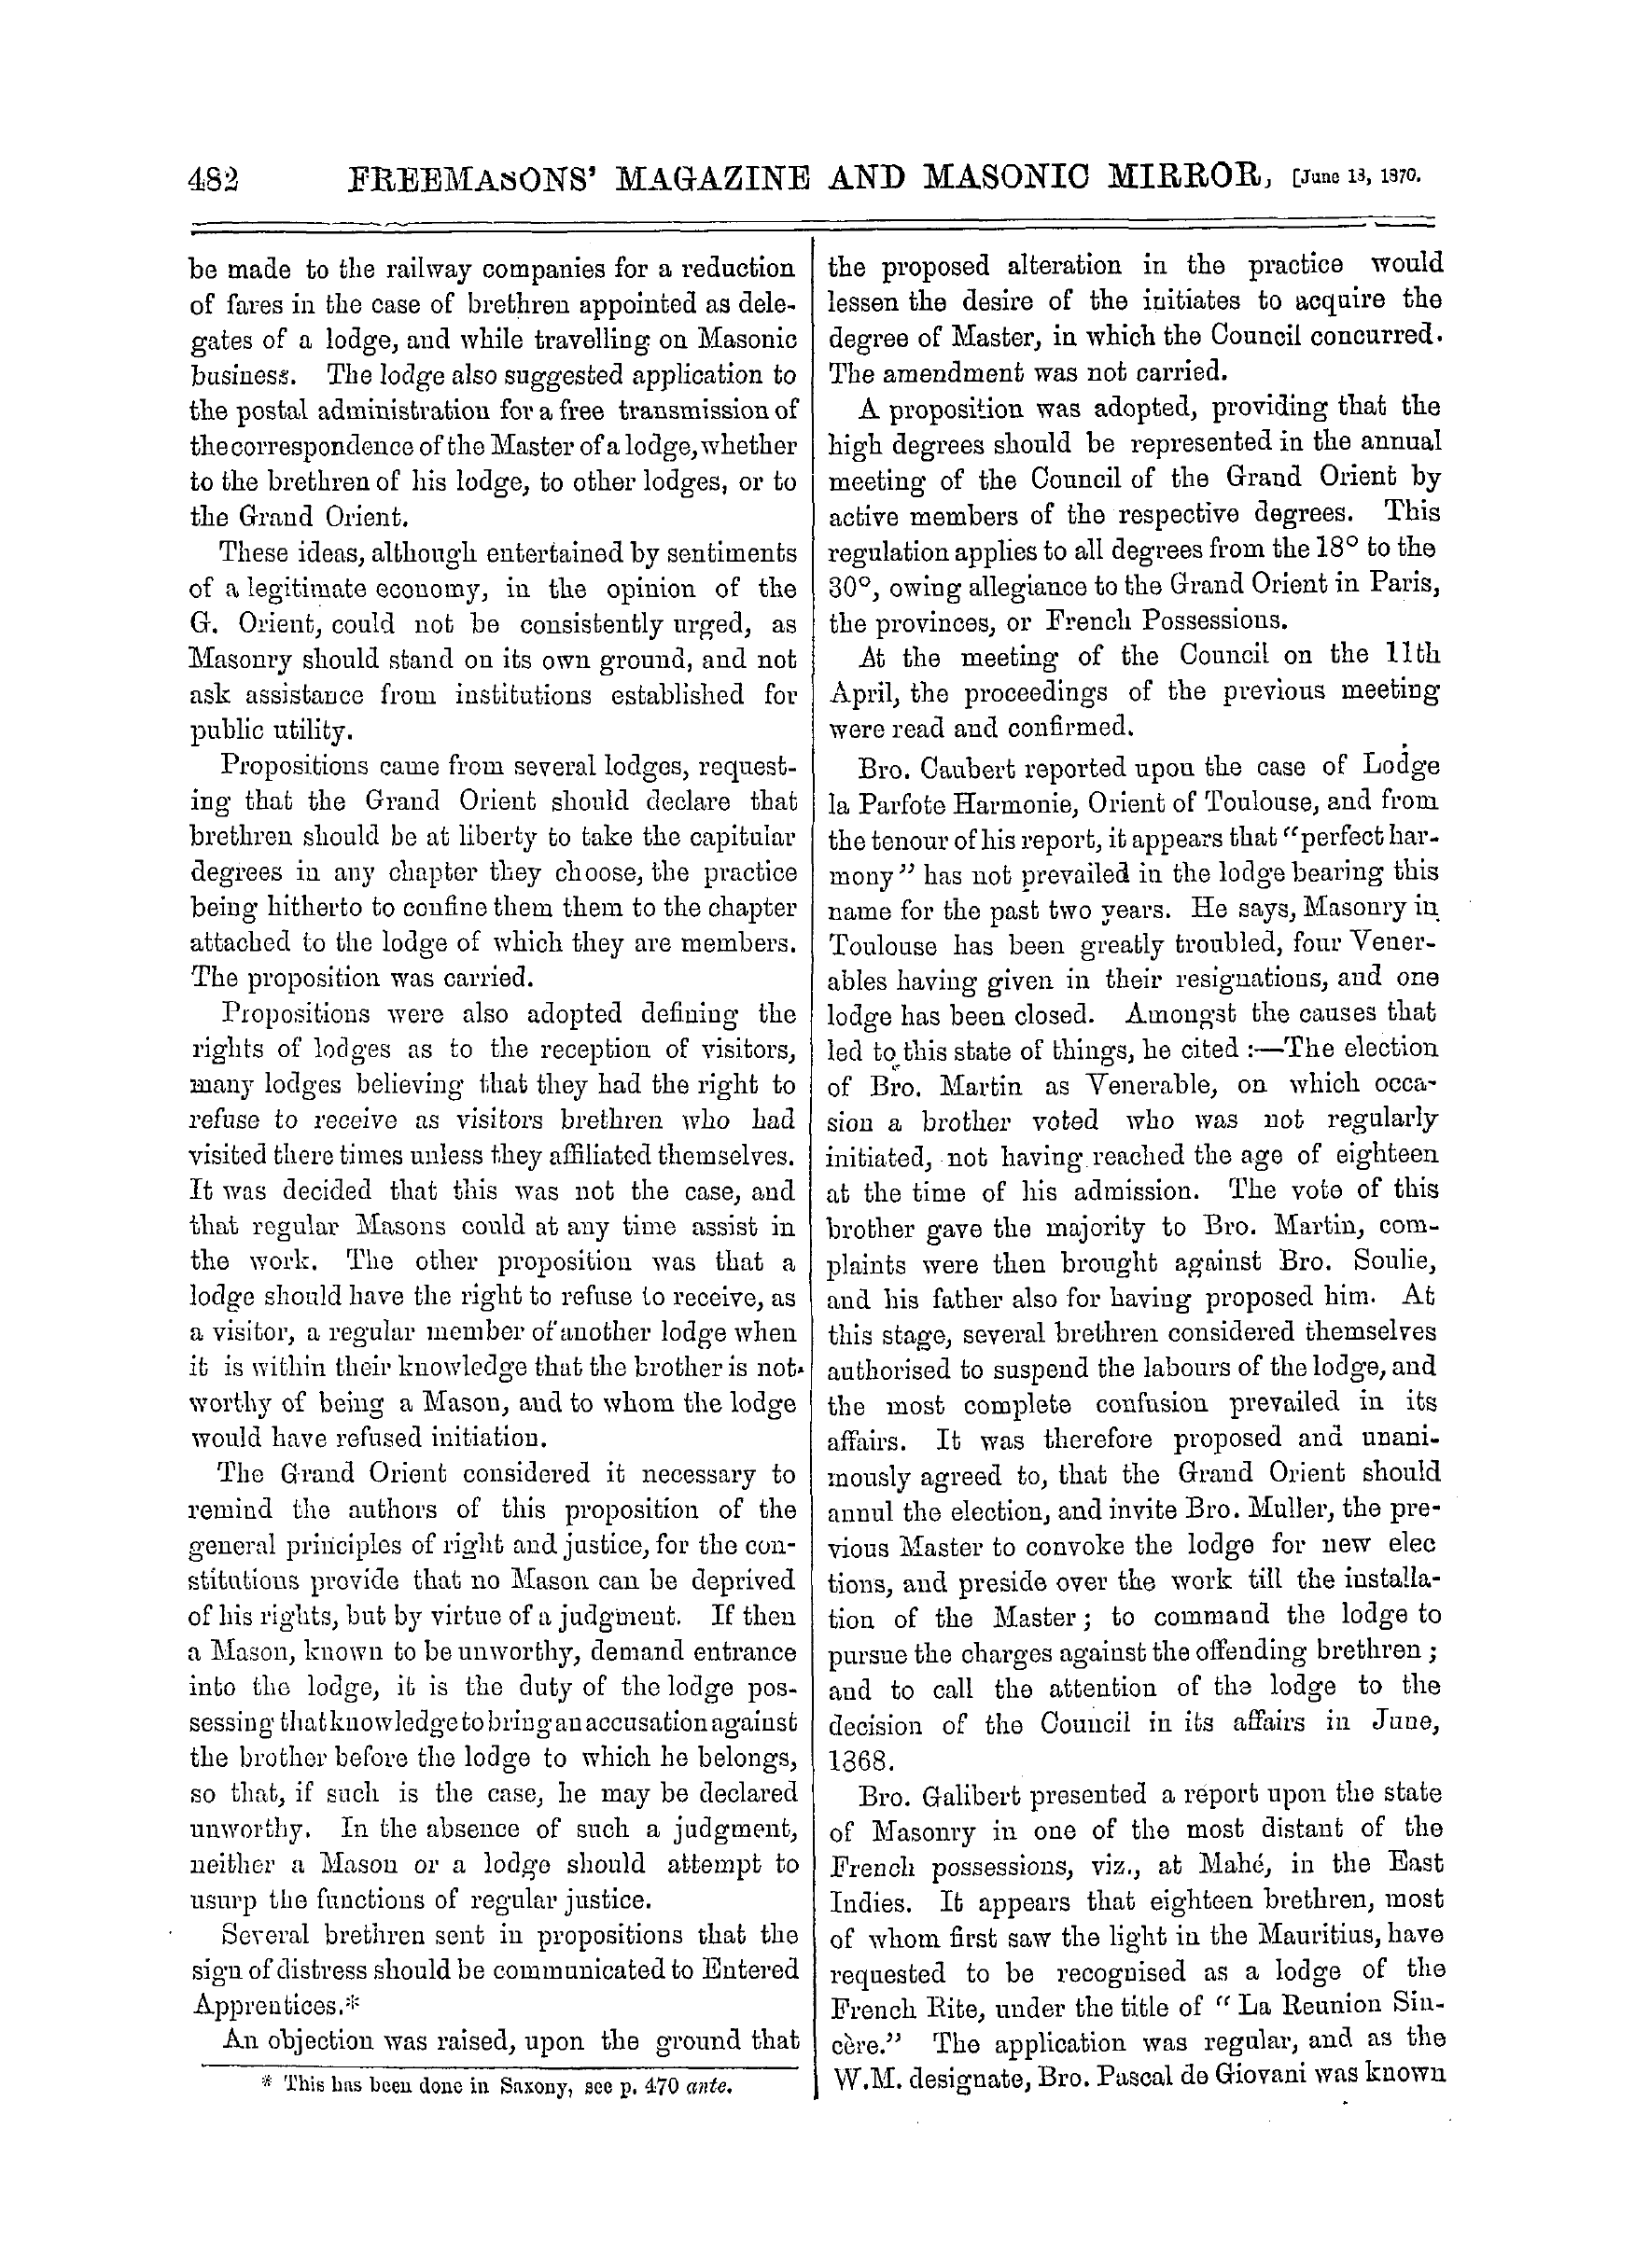 The Freemasons' Monthly Magazine: 1870-06-18: 2